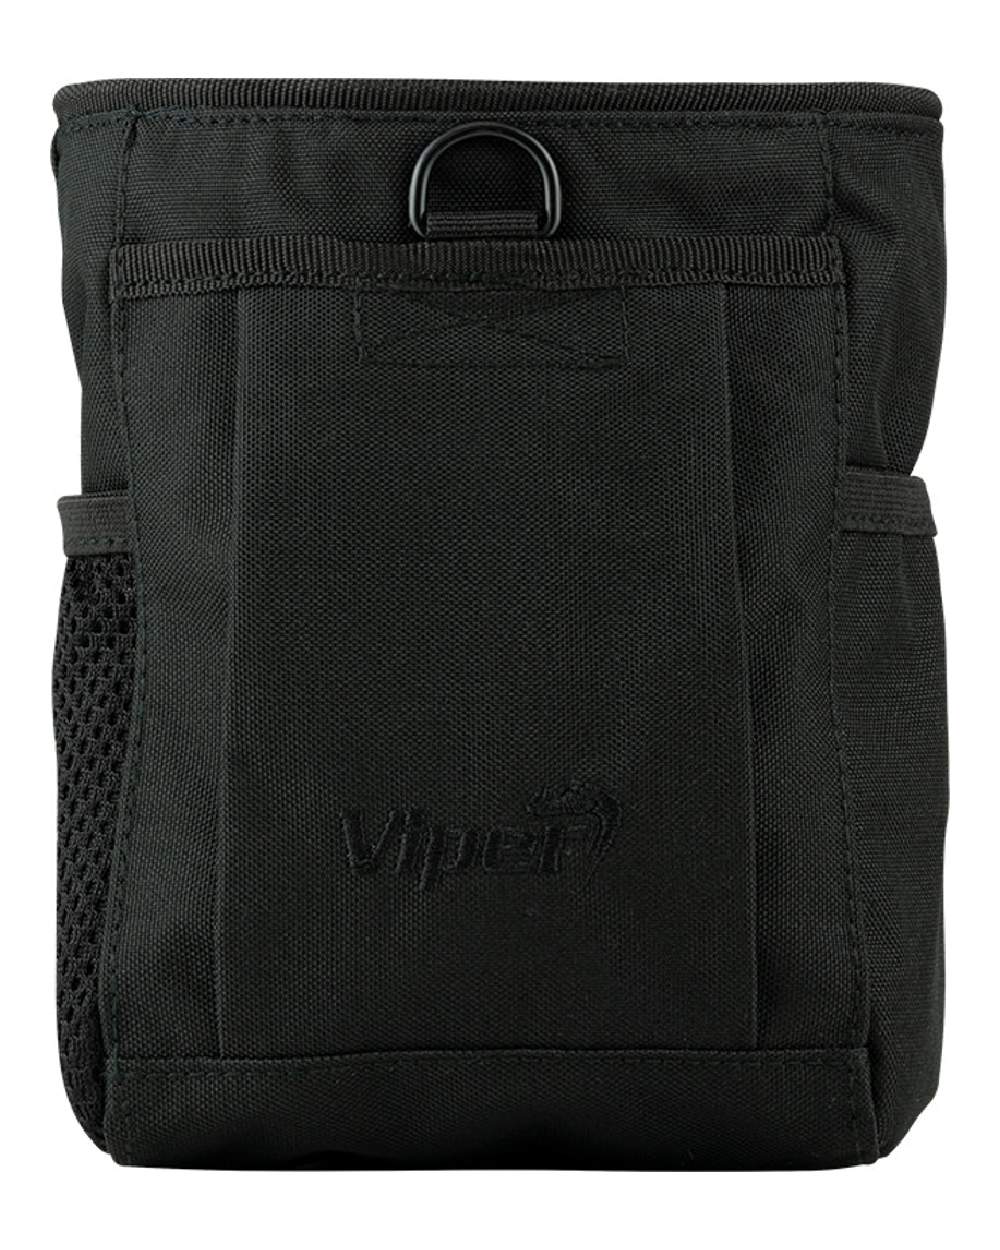 Viper Elite Dump Bag in Black 